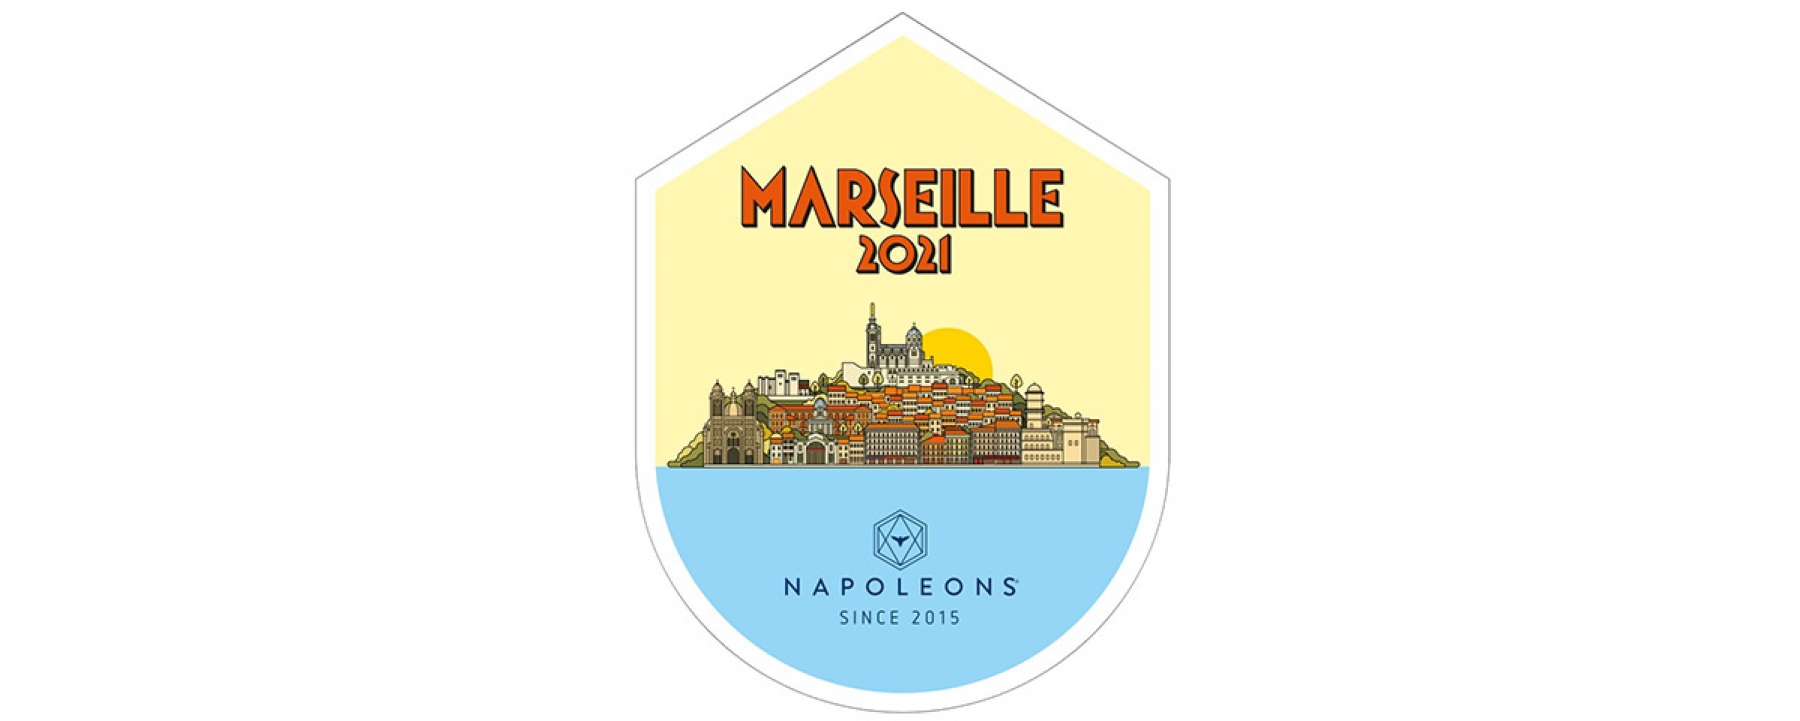 Les Napoléons - Marseille 2021, un événement organisé du 26 au 28 mai par Momentum